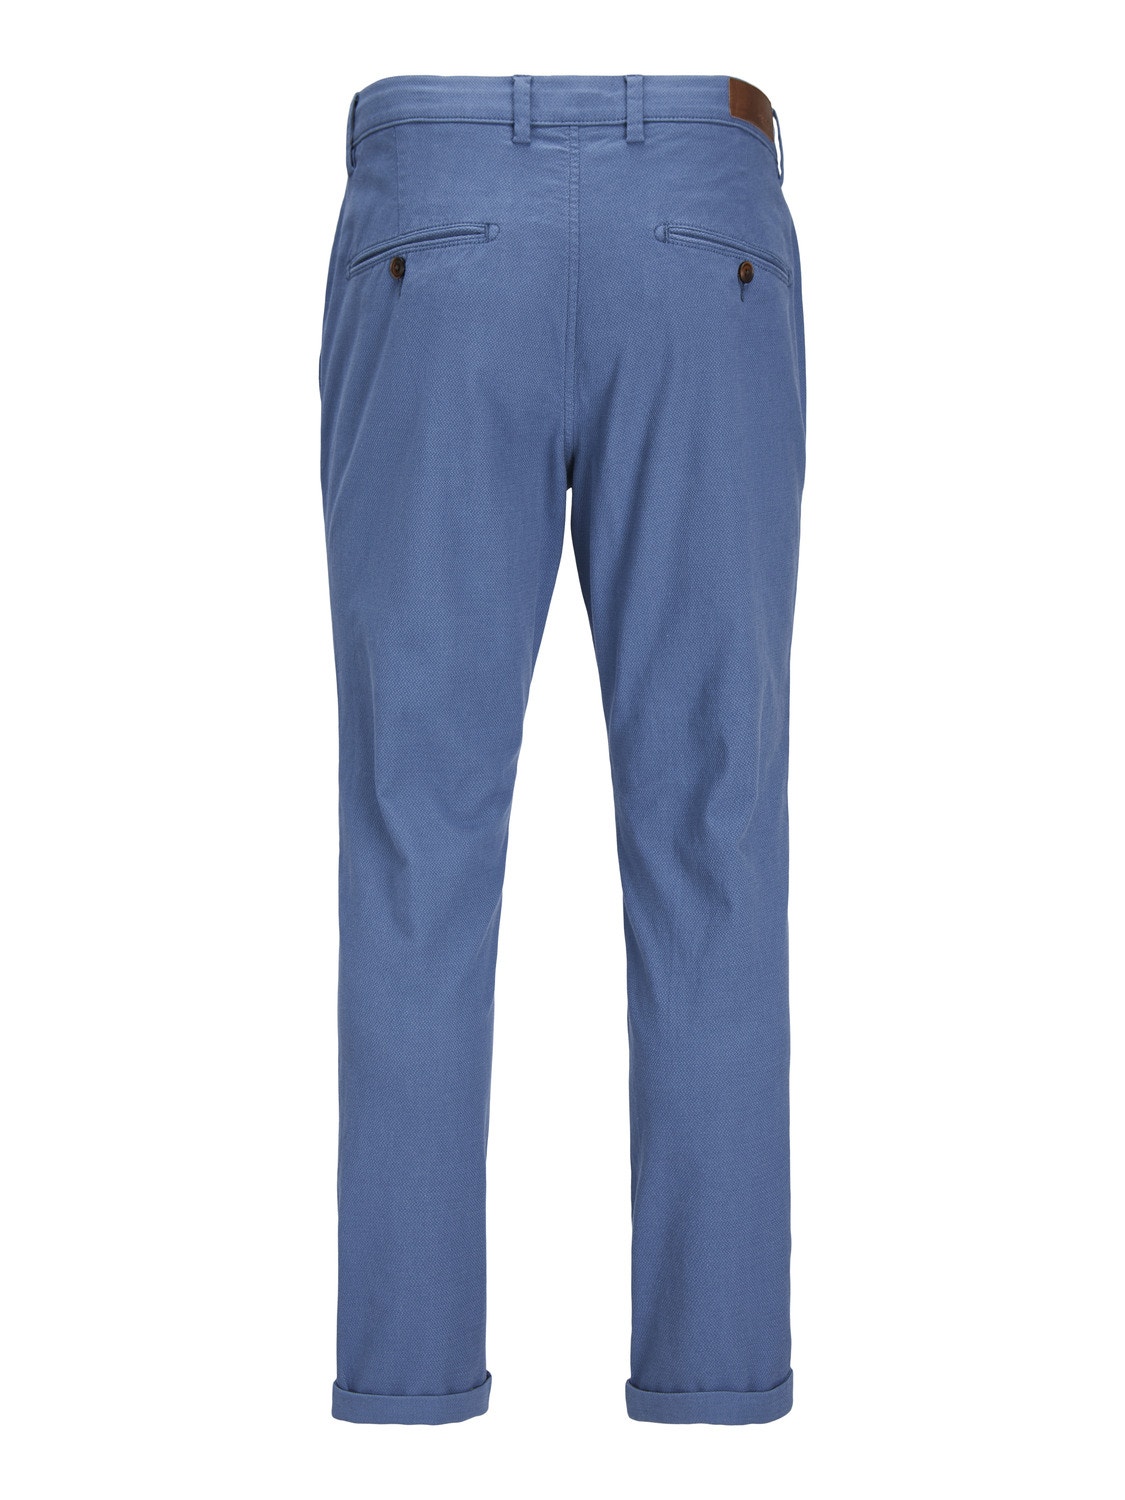 Jack & Jones Slim Fit Plátěné kalhoty Chino -Bluefin - 12206198